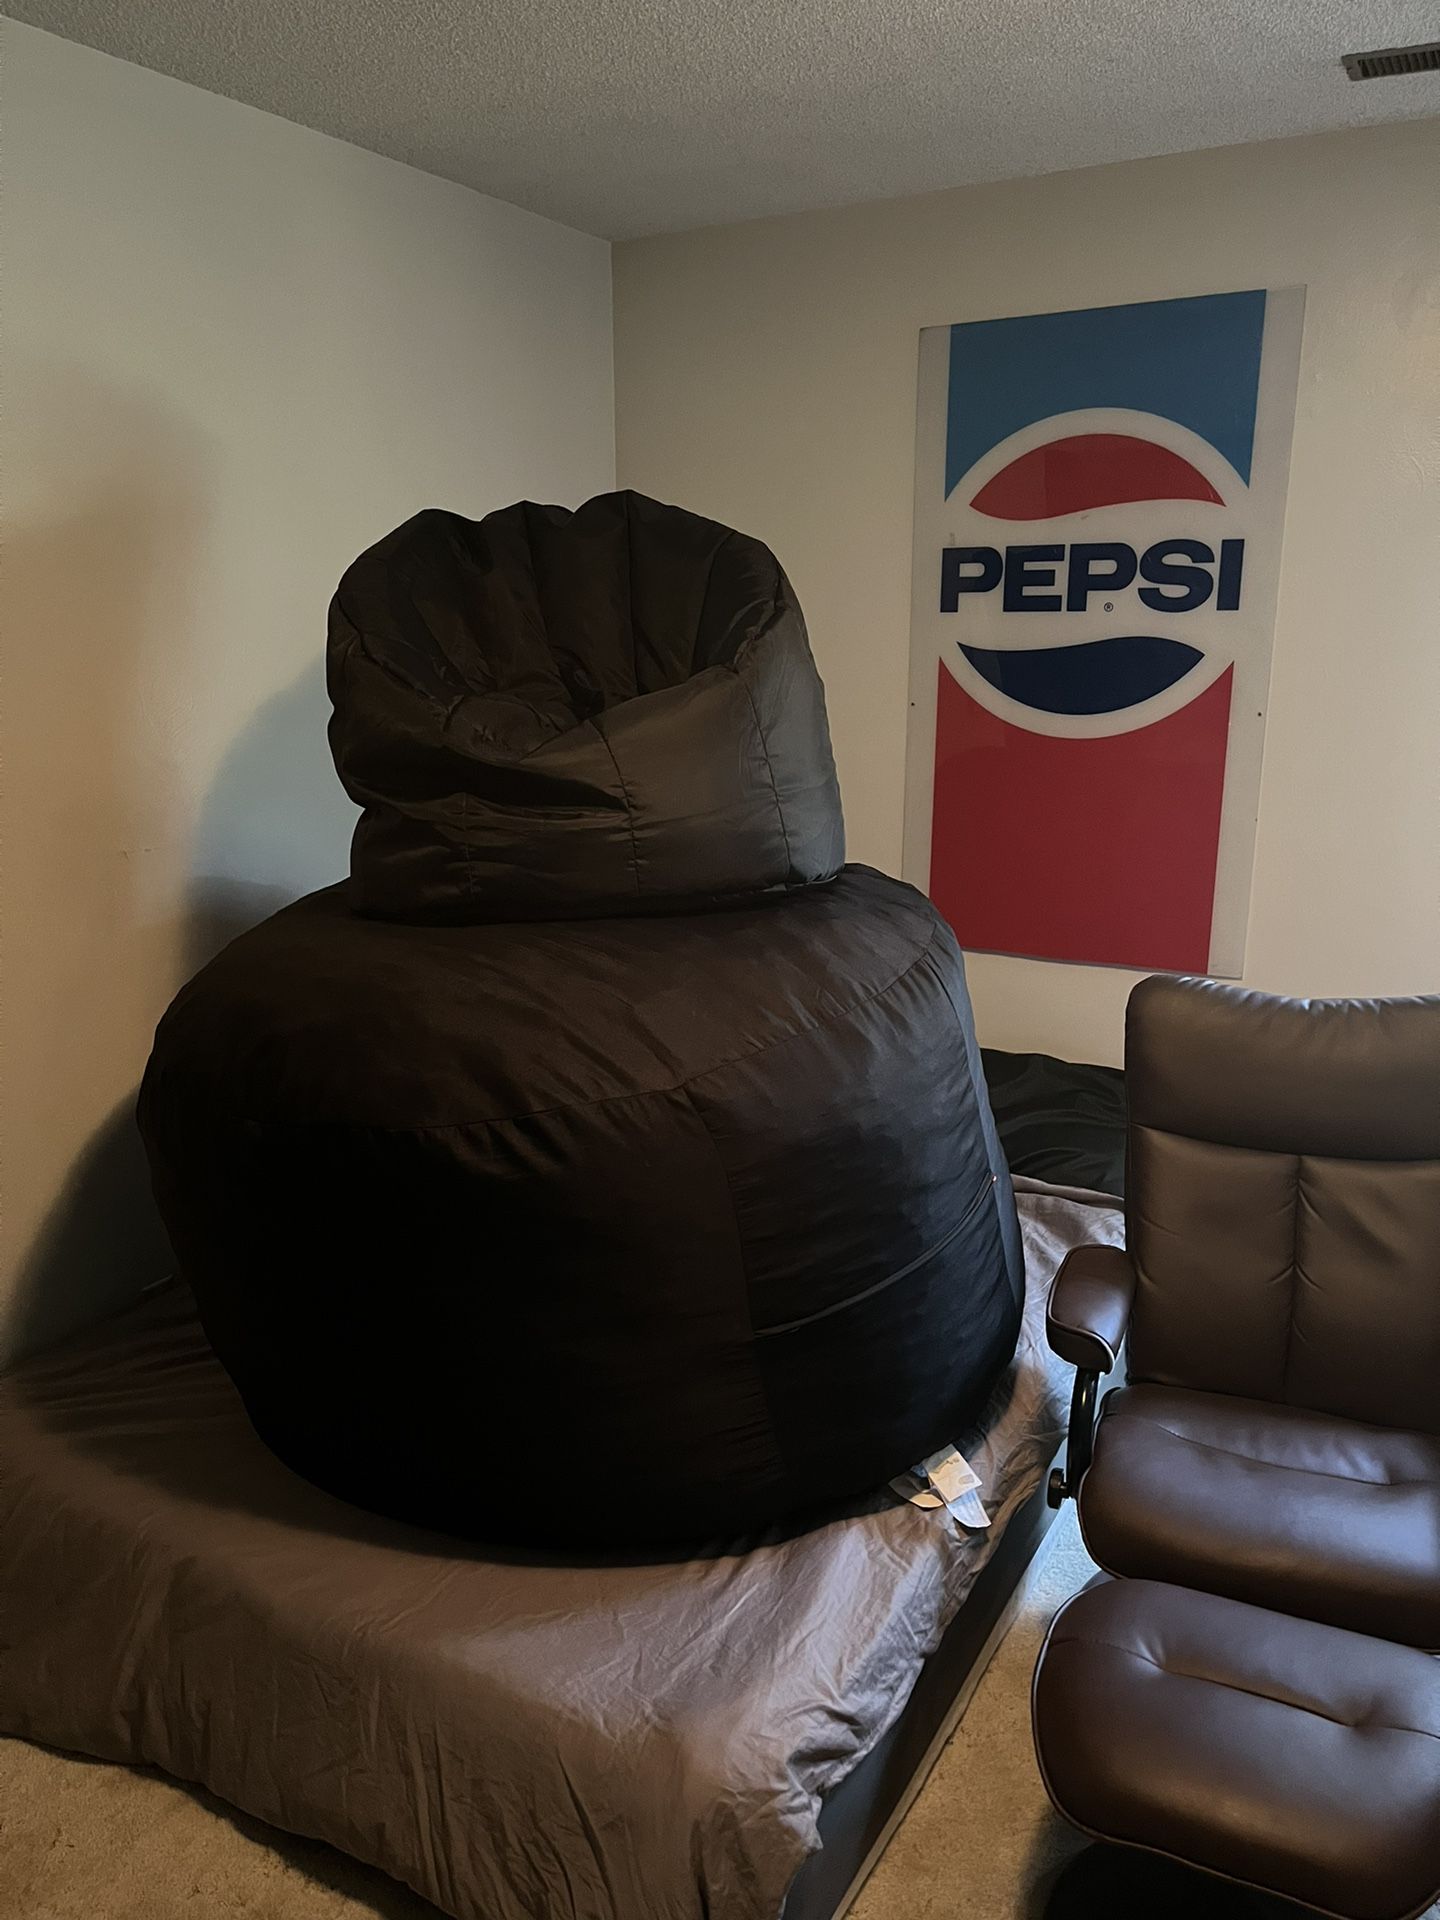 Large Bean Bag Chair